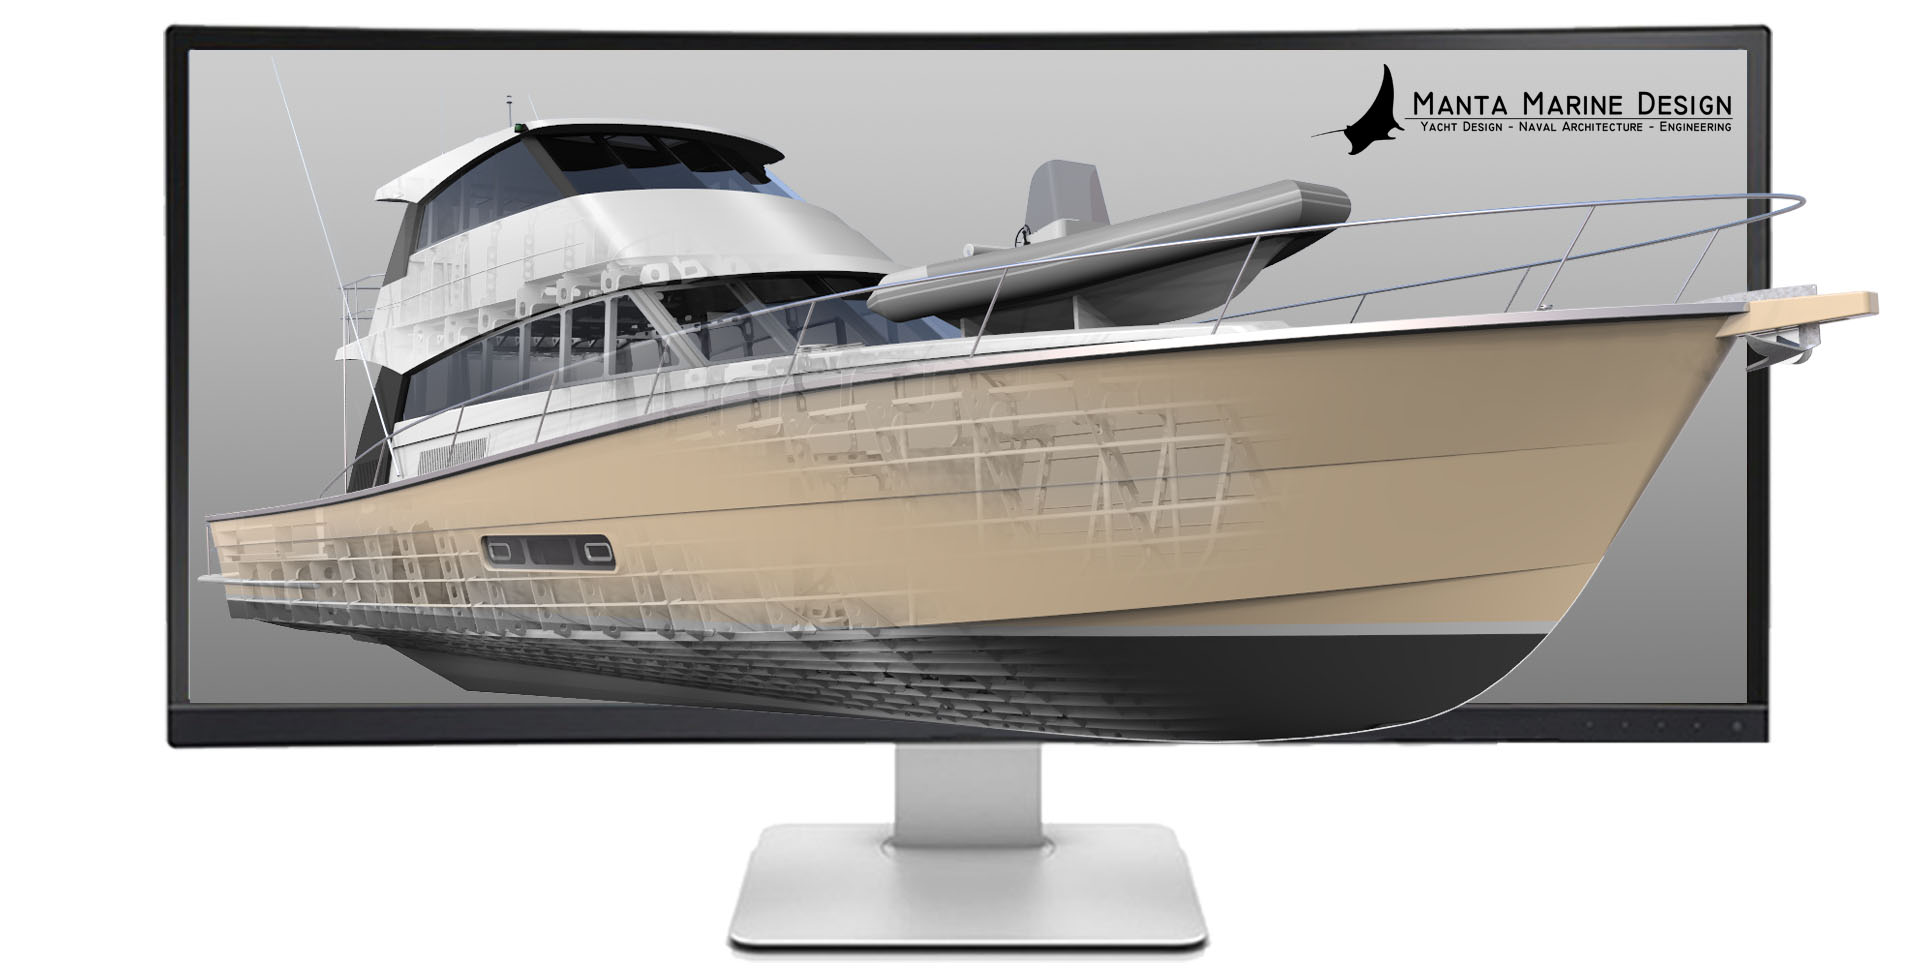 Manta Marine Design, Naval Architecture, Engineering, Yacht Design